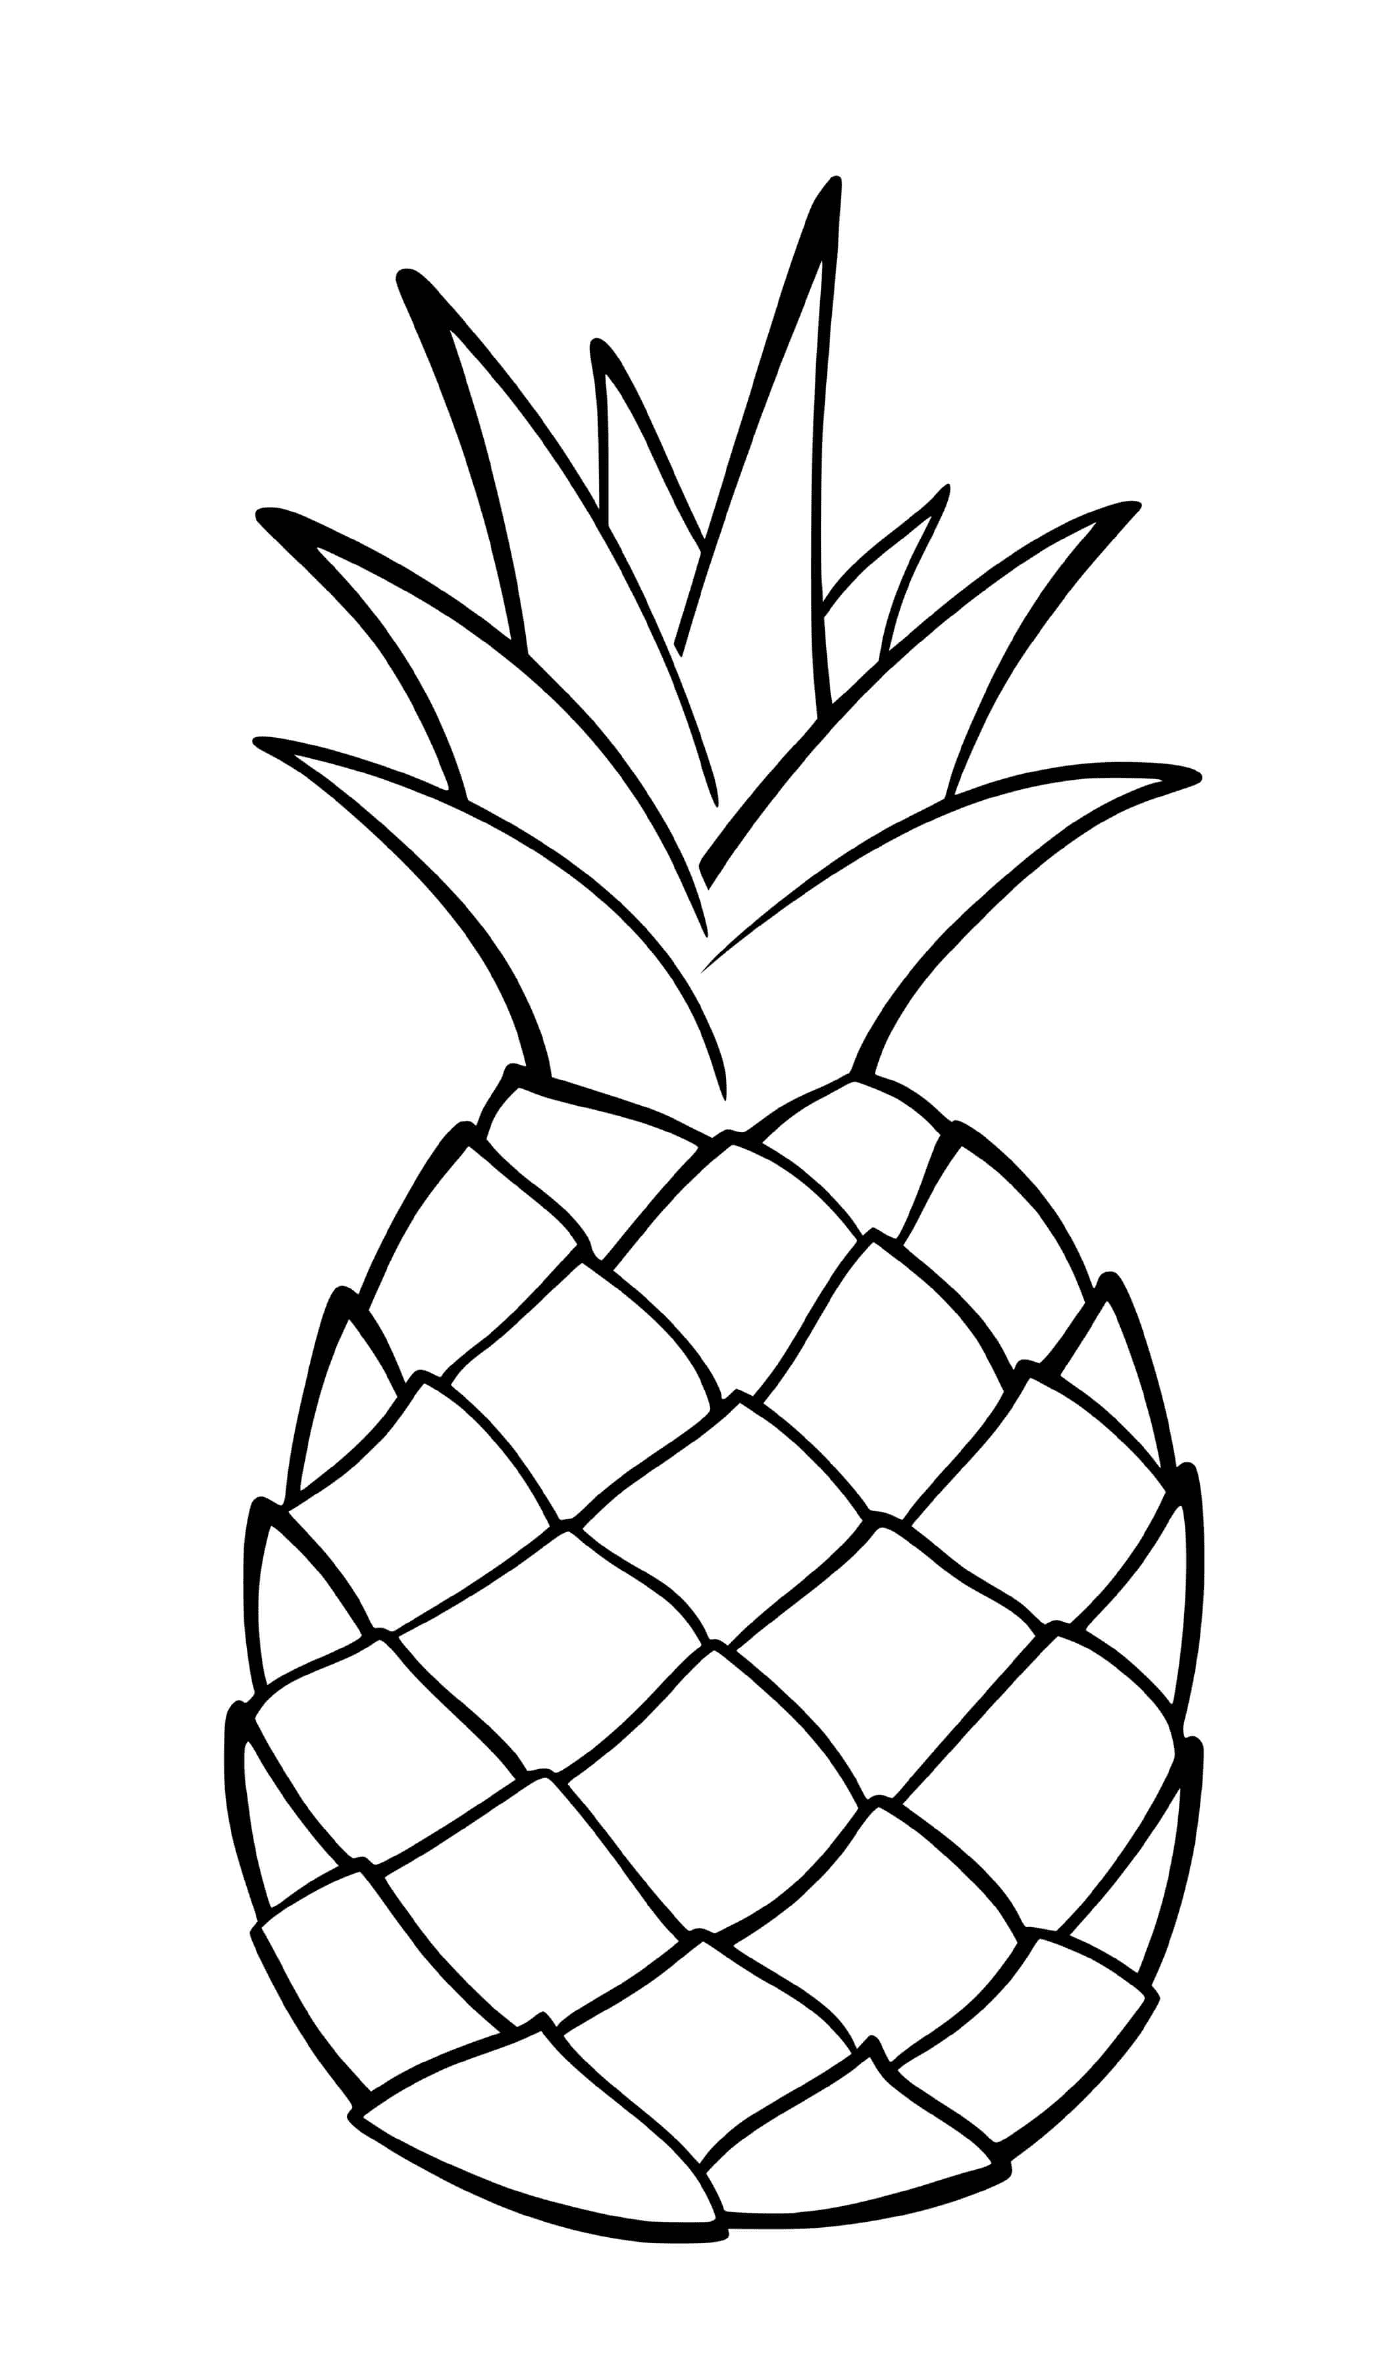  Экзотический фрукт, называемый ананас 